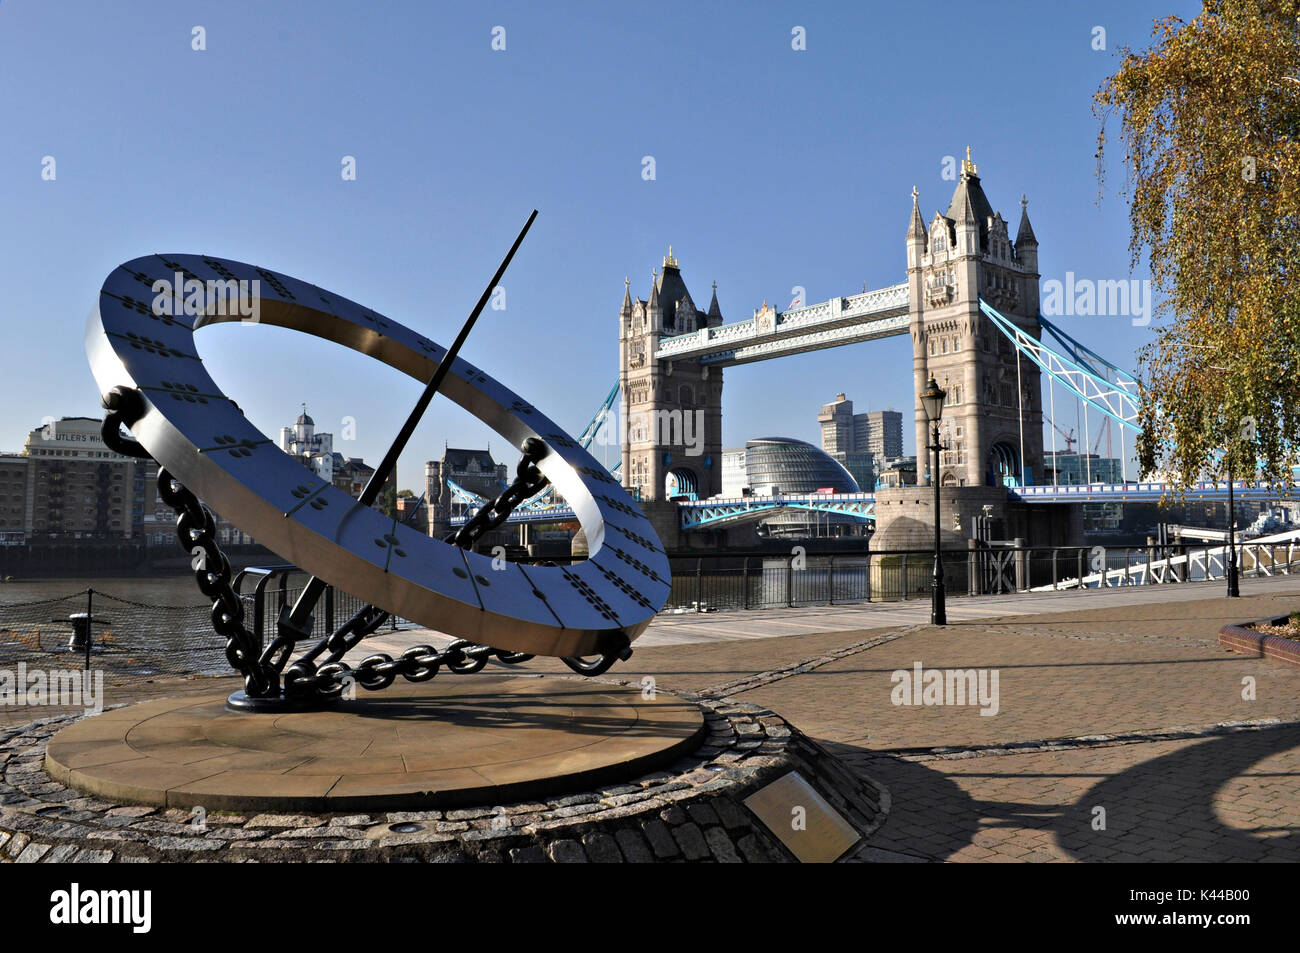 El Tower Bridge y el mirar la escultura, representando un reloj de sol, Wendy Taylor. Símbolo de la ciudad de Londres, este monumento nunca defrauda, con sus torres de estilo neo-gótico y cables que admiten color azul es un verdadero espectáculo. Foto de stock